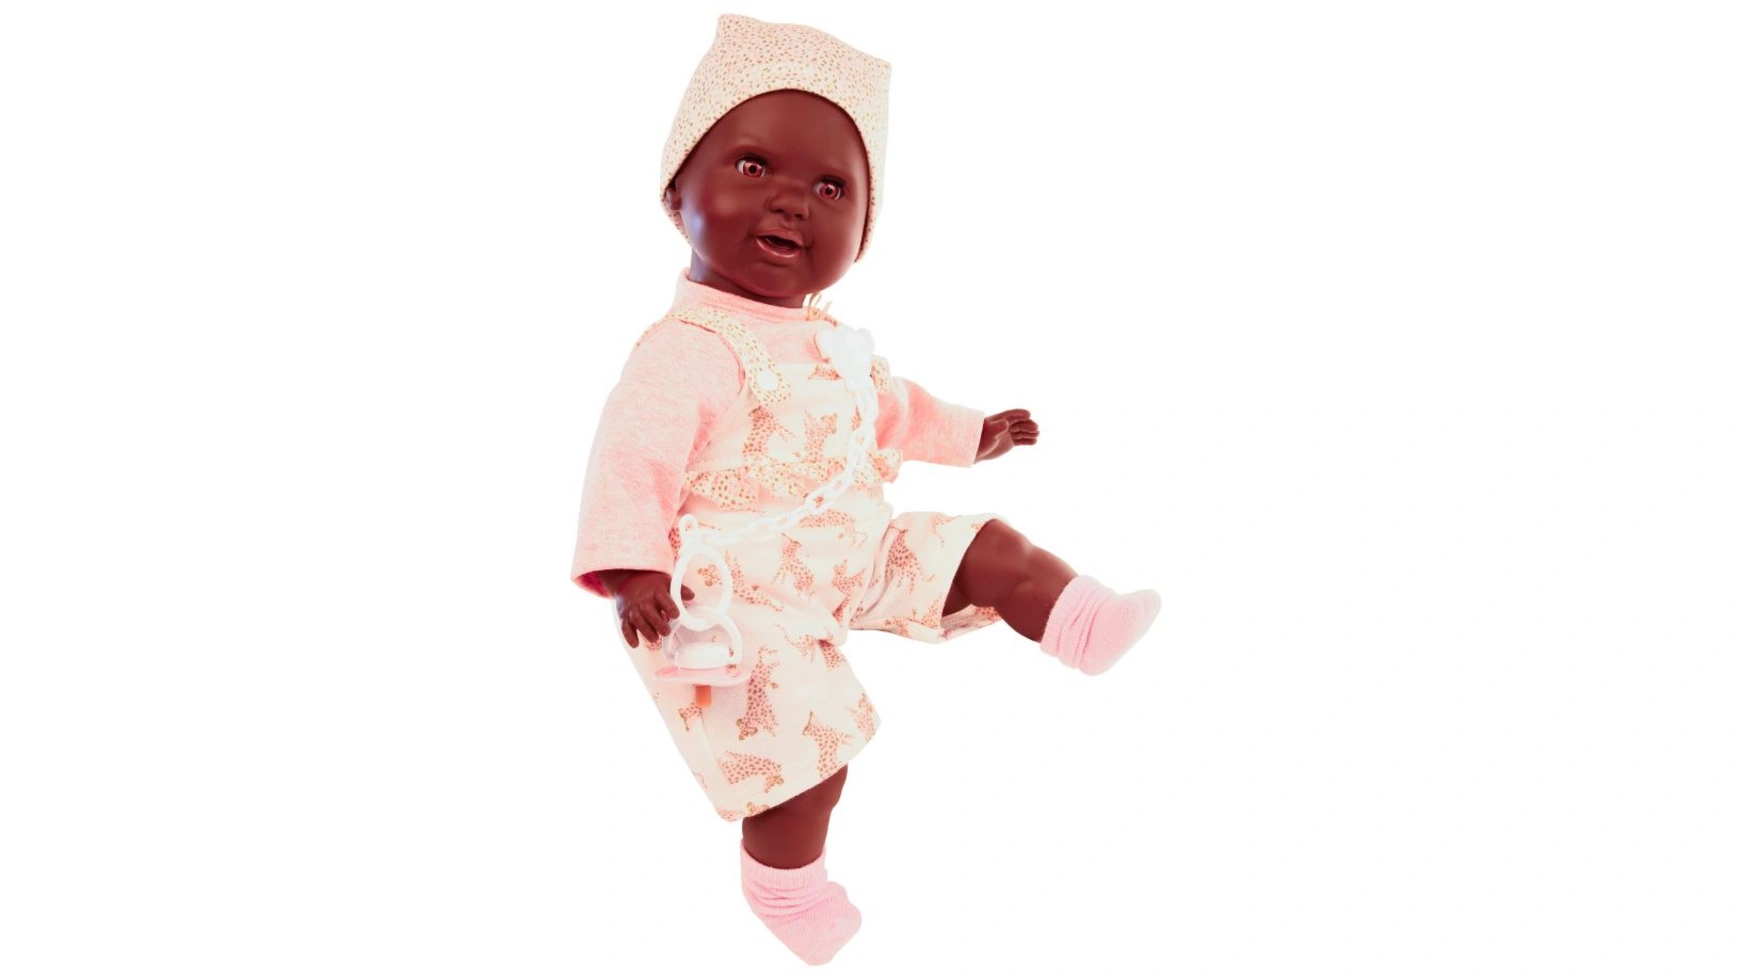 Schildkroet-Puppen Соска-пустышка baby Lenchen 37 см, роспись волос, карие спящие глаза, одежда розового/белого цвета